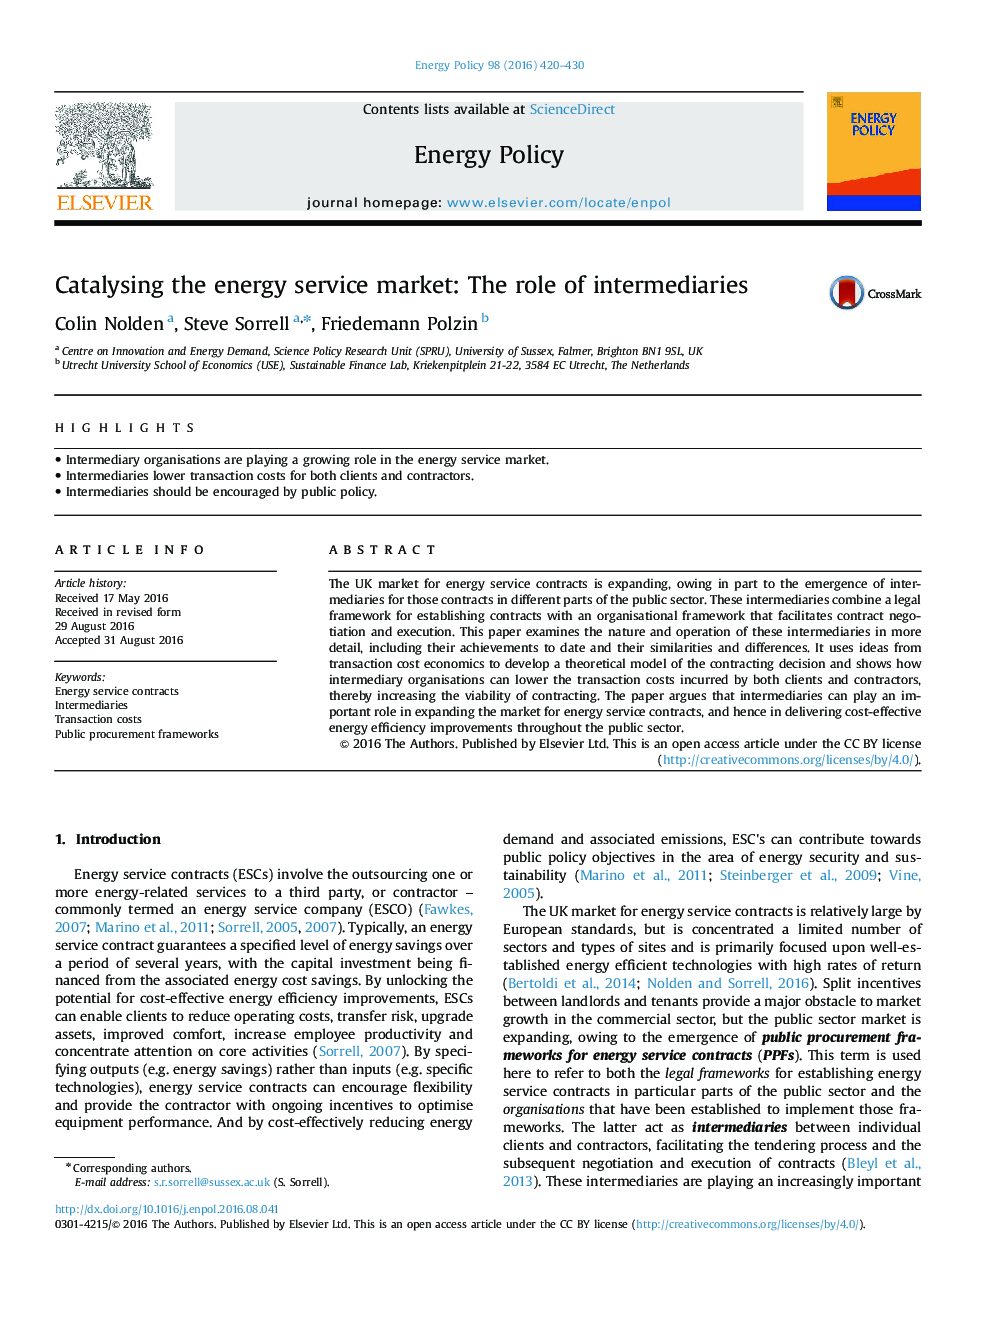 عرضه خدمات بازار انرژی: نقش واسطه ها 